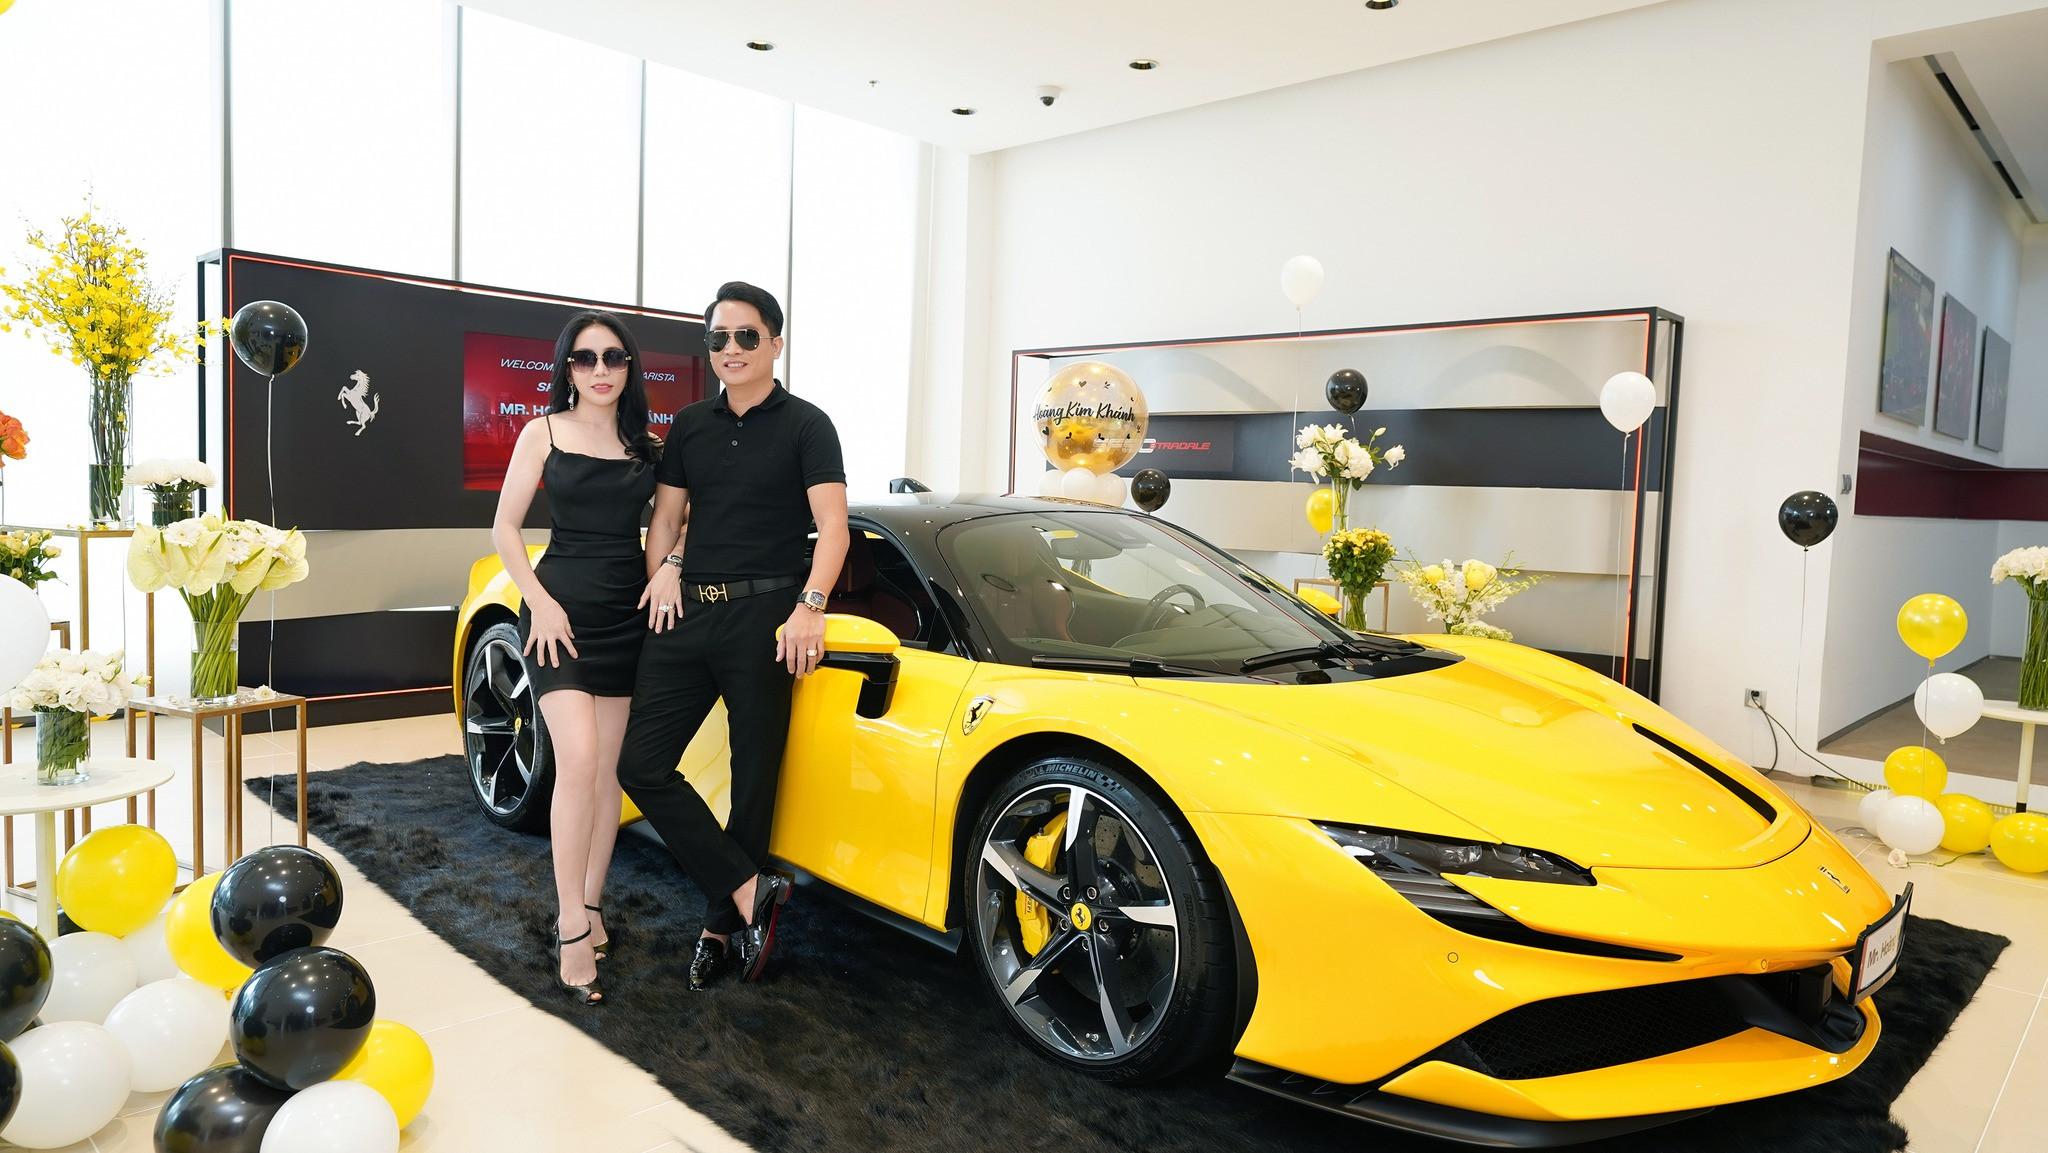 Đại gia Hoàng Kim Khánh tậu siêu xe Ferrari SF90 Stradale trị giá hơn 40 tỷ